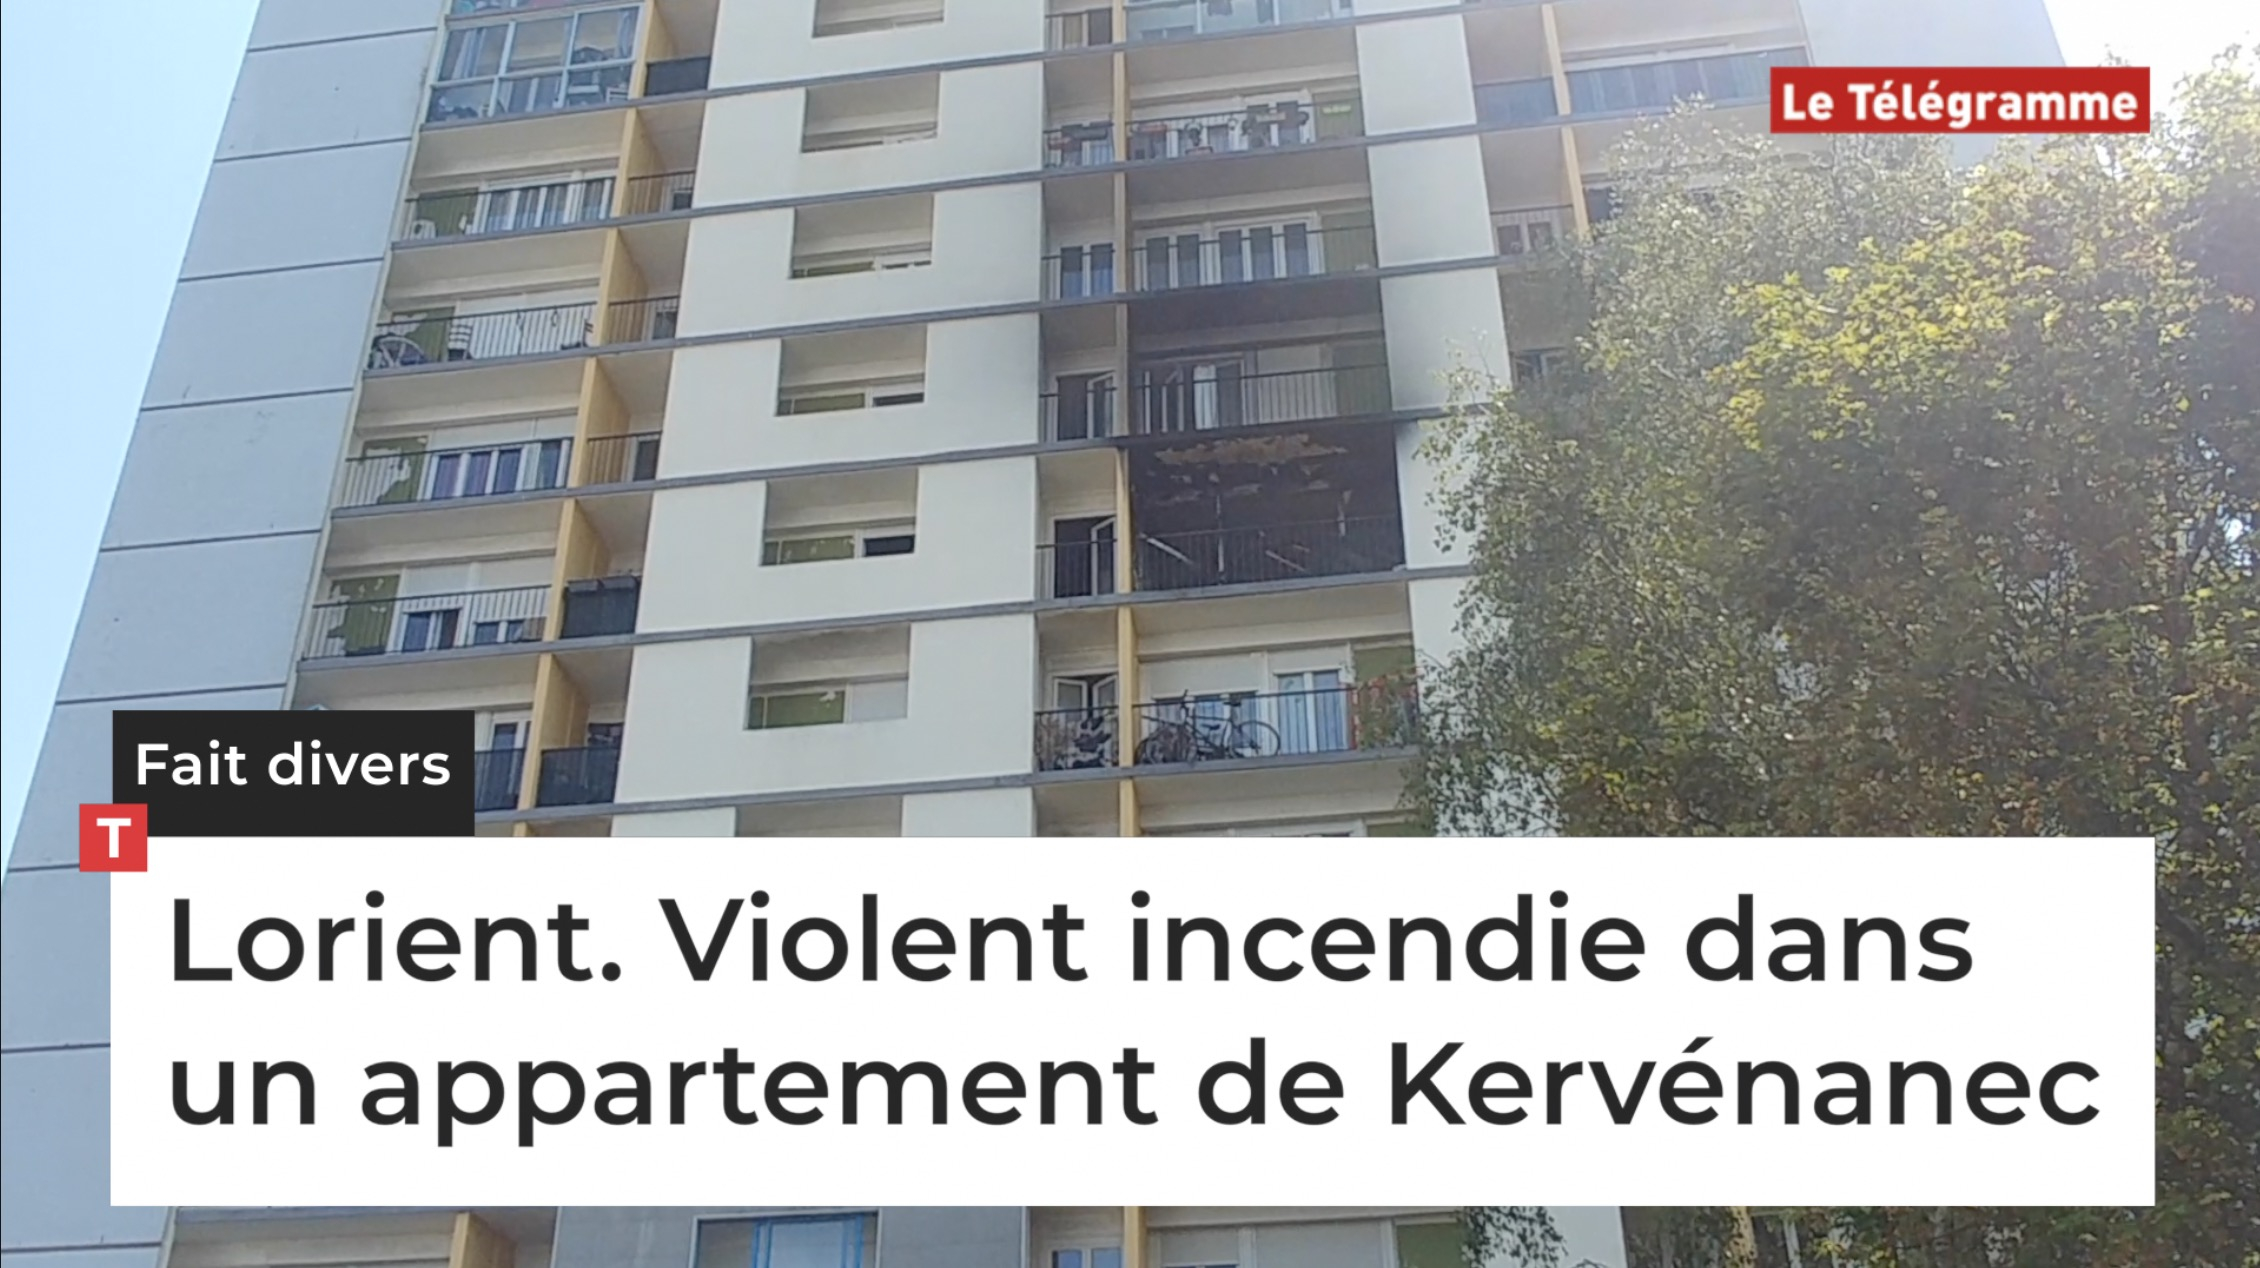 Lorient. Violent incendie dans un appartement de Kervénanec (Le Télégramme)